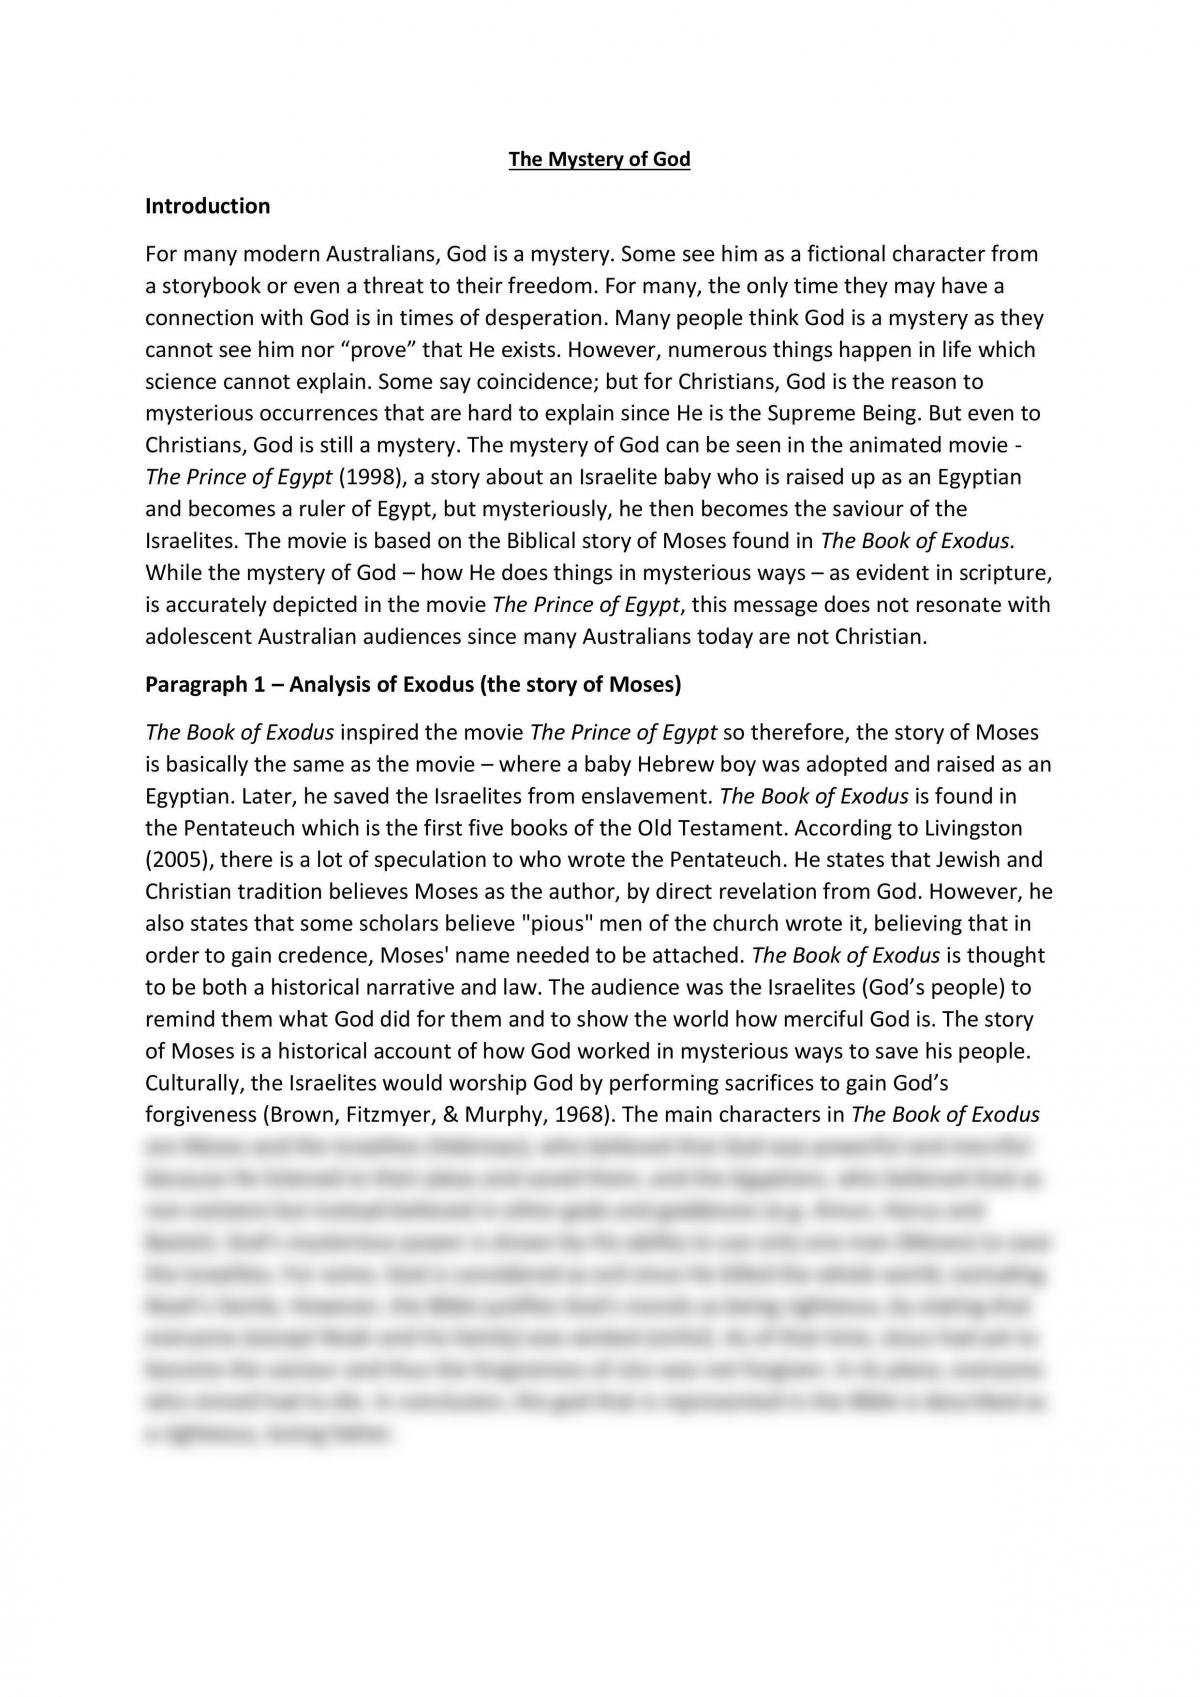 Prince of Egypt Analysis  - Page 1